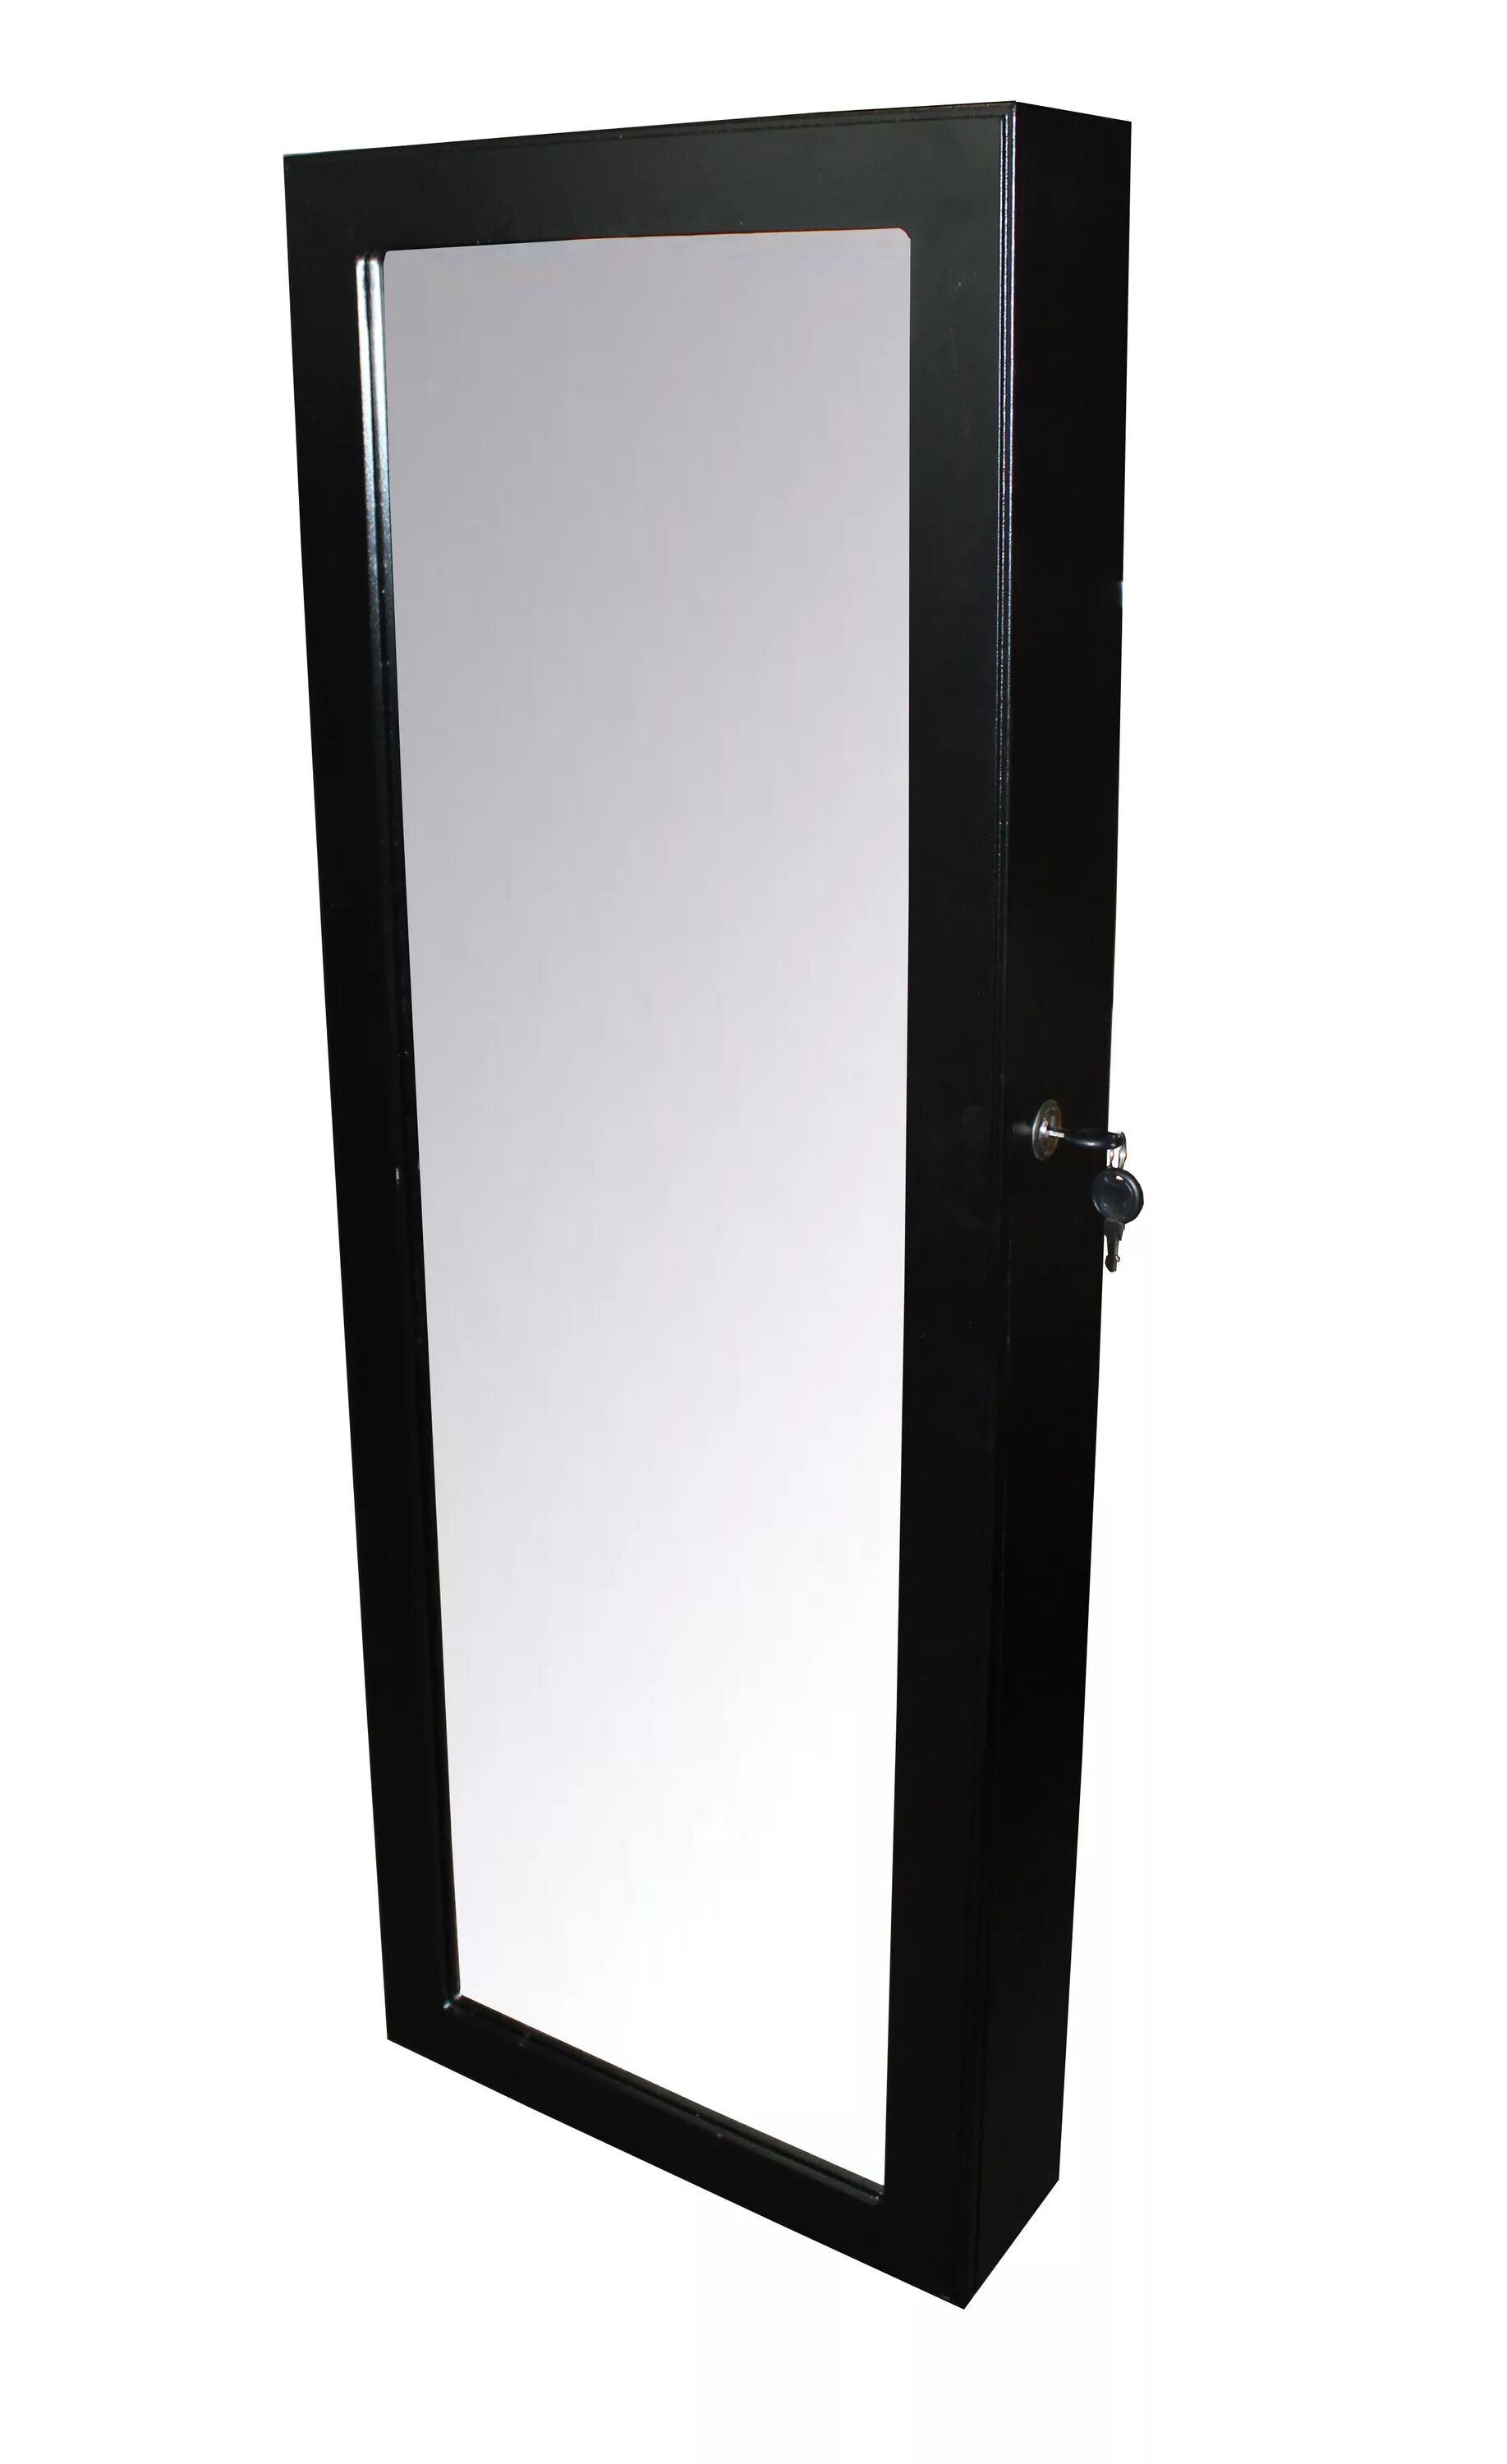 Зеркало-шкаф Bradex "тайник". Td 0226 зеркало-шкаф «тайник», черное. Зеркало-шкаф «тайник», черное td 0226 (td 0226). Зеркало дверца для щитка. Купить зеркало в дверь в спб